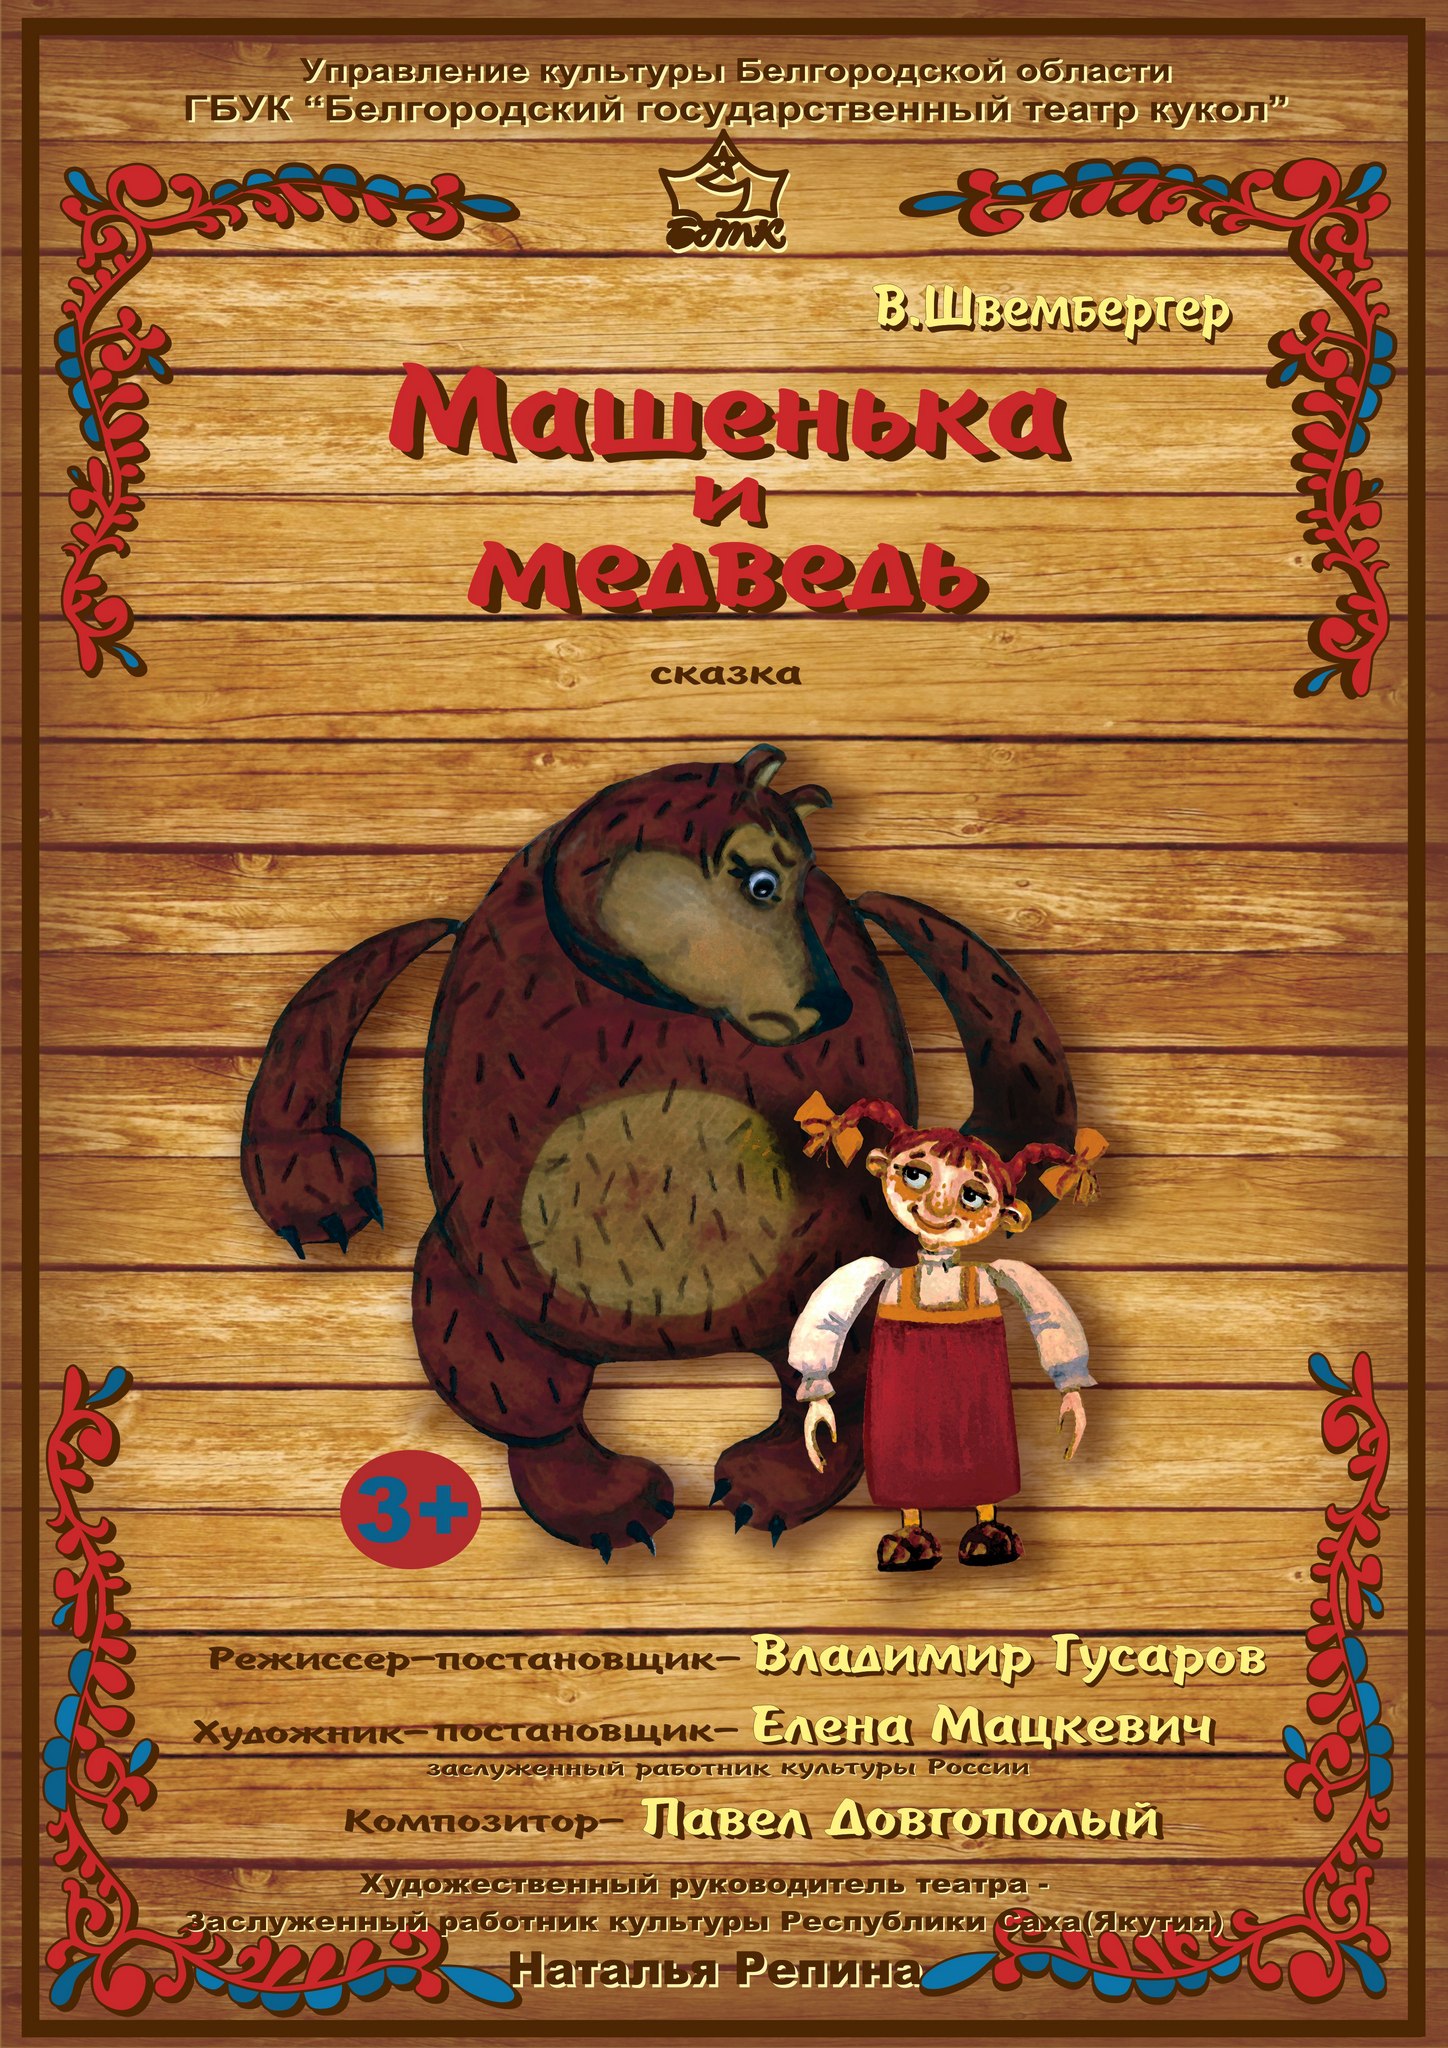 Премьера спектакля «Машенька и медведь» в Белгороде